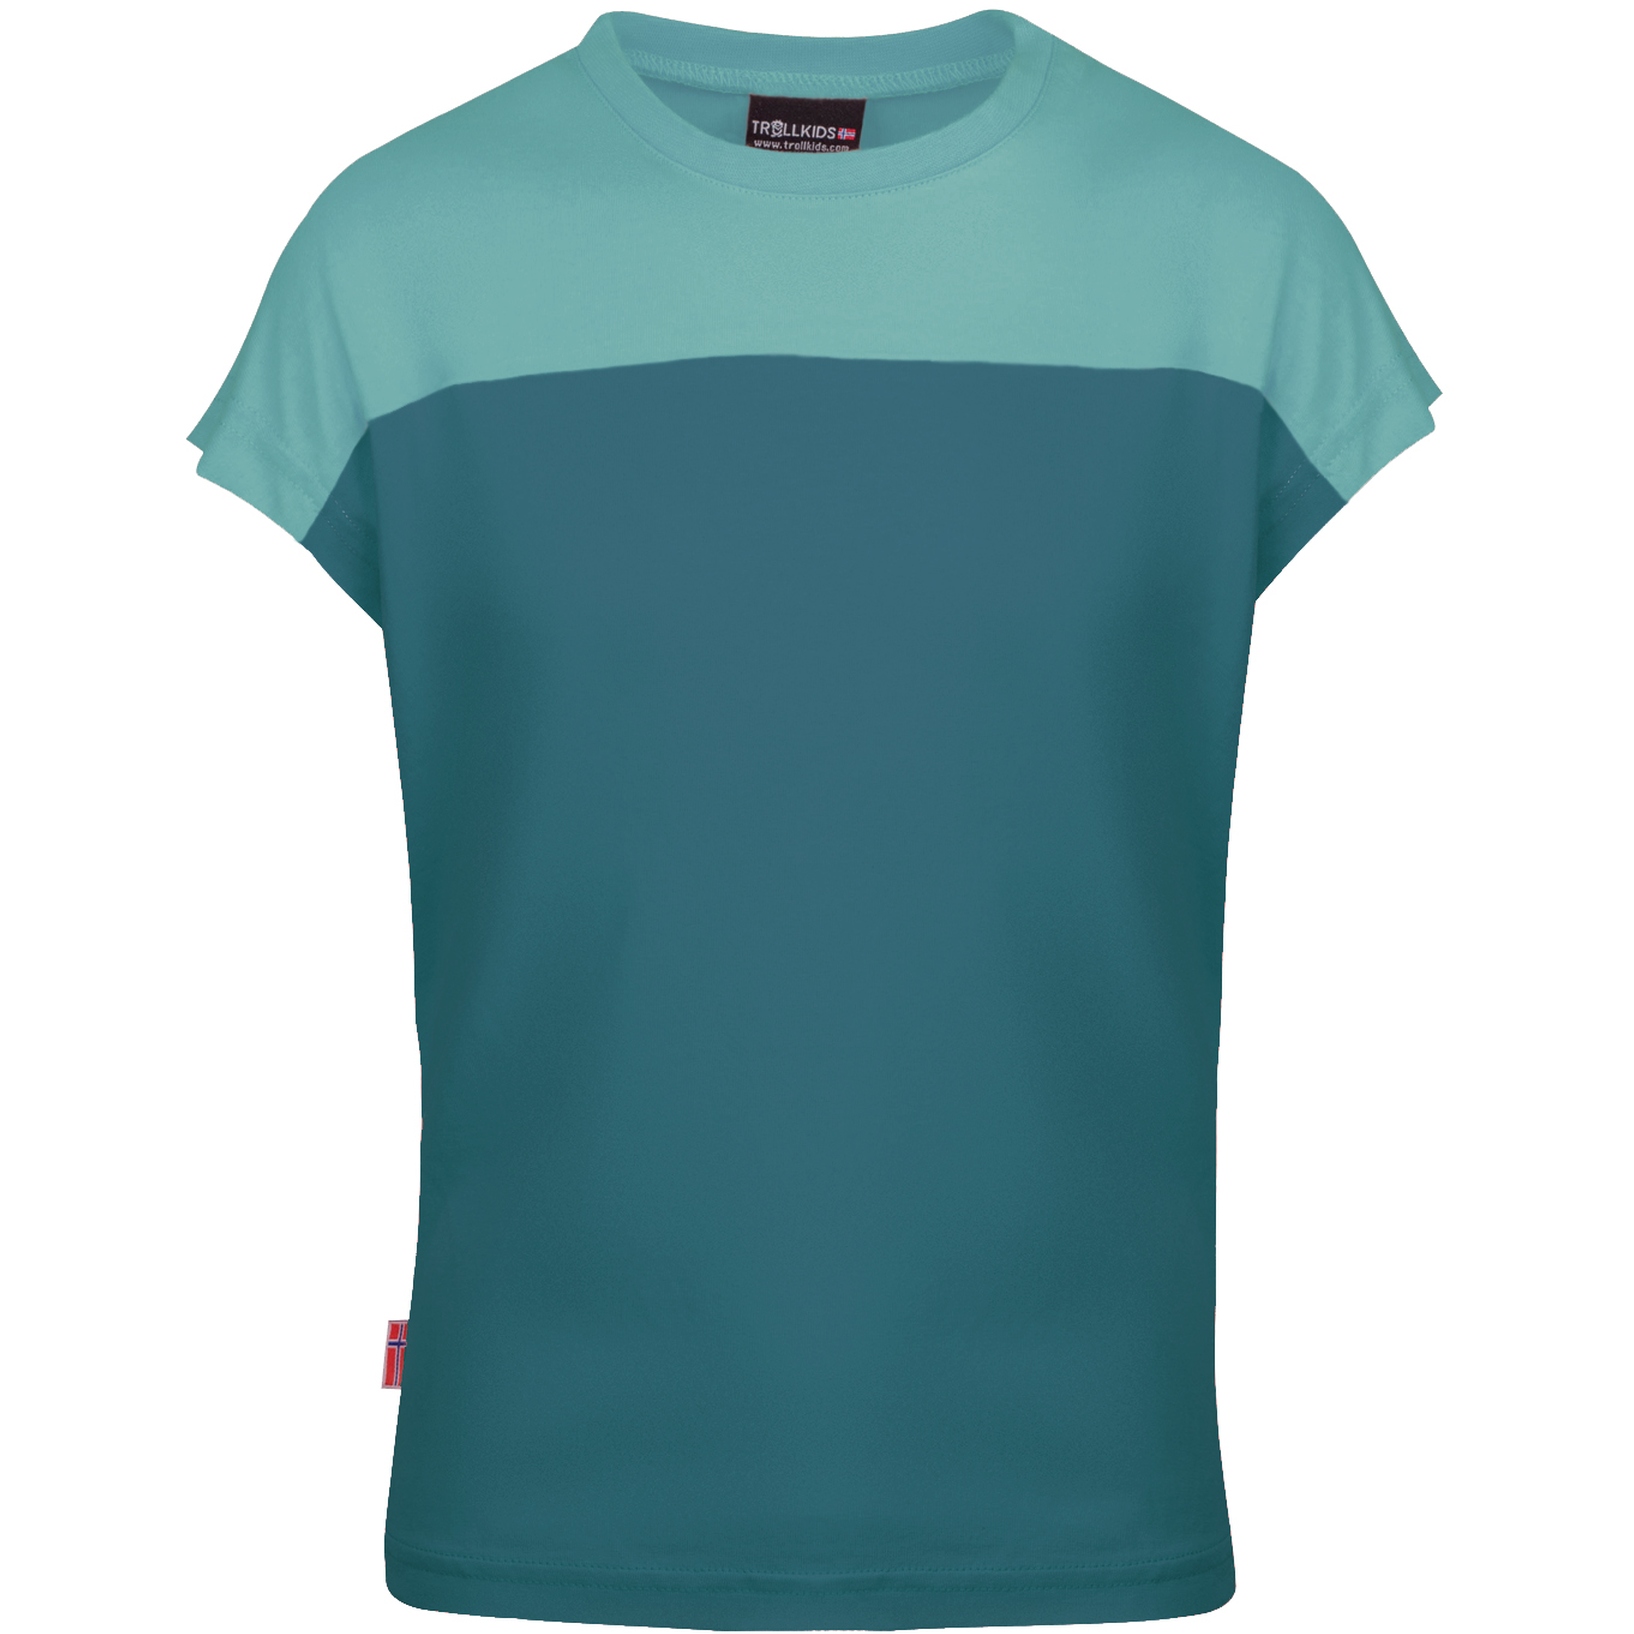 Produktbild von Trollkids Bergen Mädchen T-Shirt - teal/glacier green